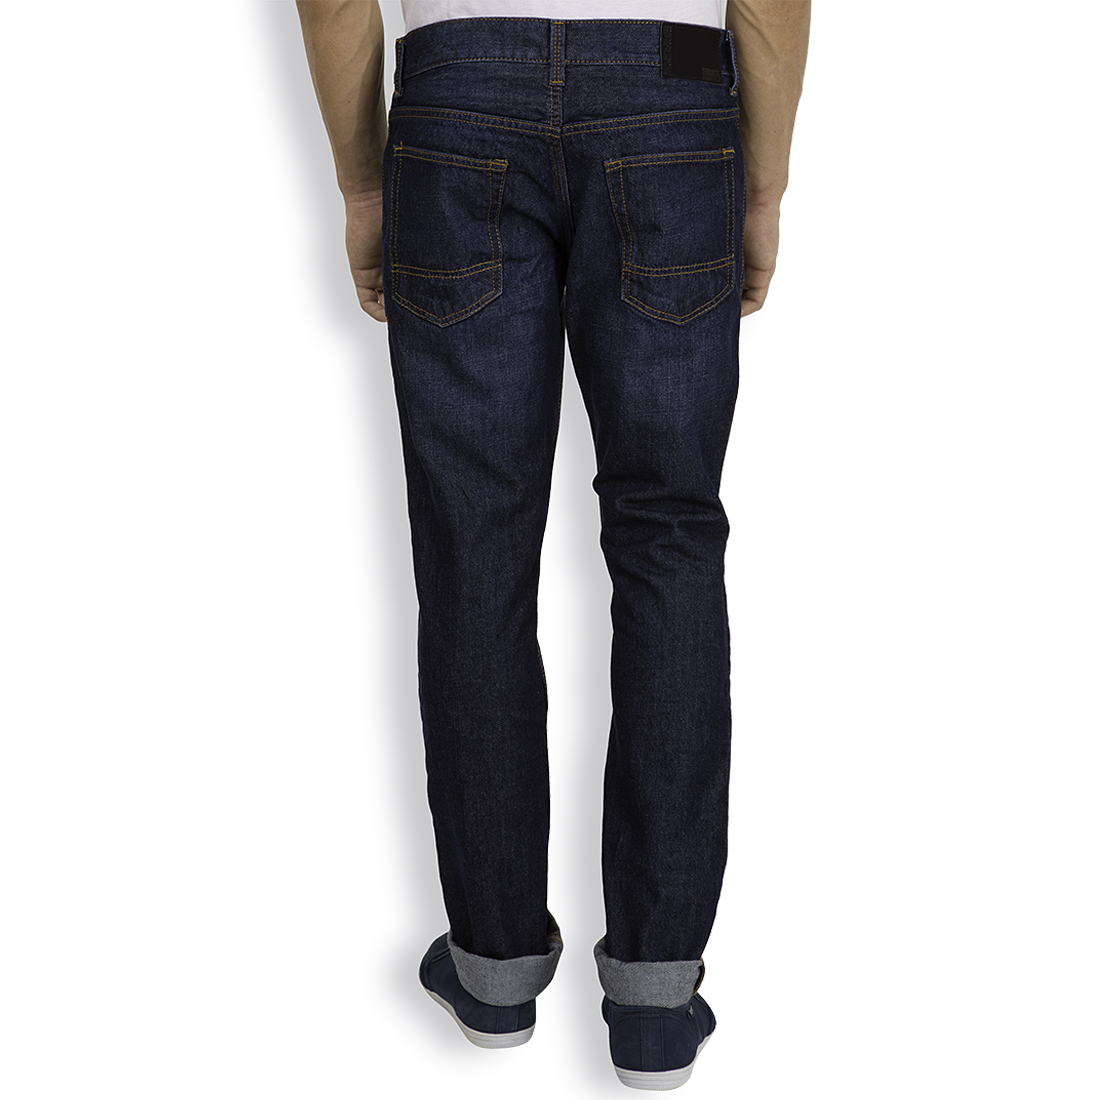 Buy Highlander Navy Blue Slim Fit Mid Rise Men Jeans Online @ ₹699 from ...